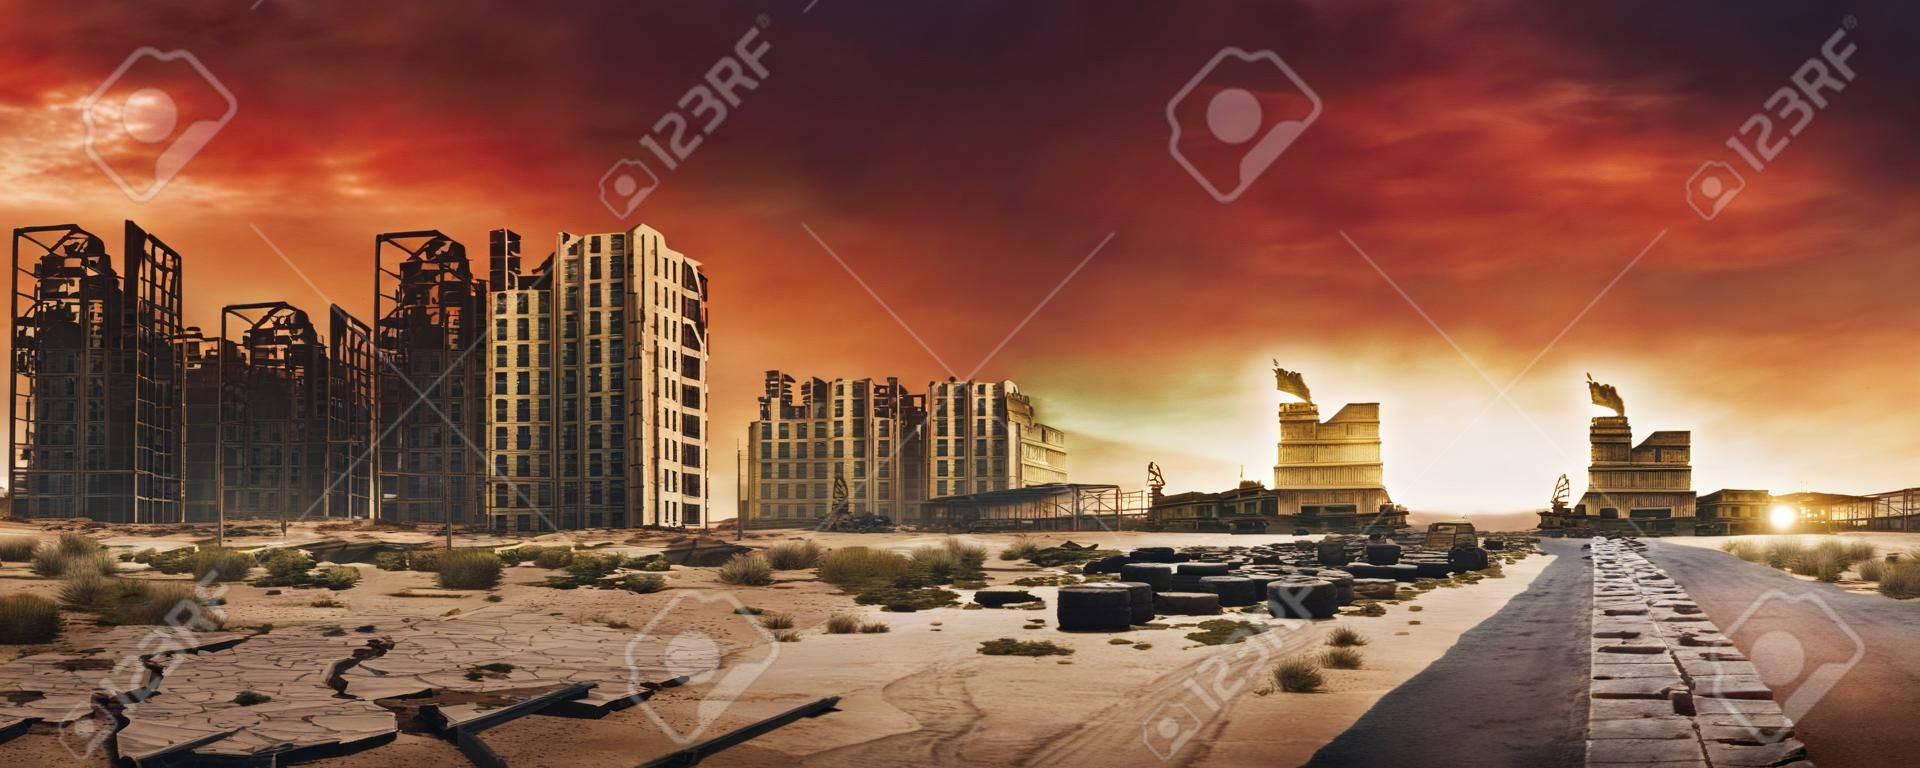 Imagem de fundo pós-apocalíptica da cidade deserta com buidings abandonados e destruídos, estrada rachada e sinal.